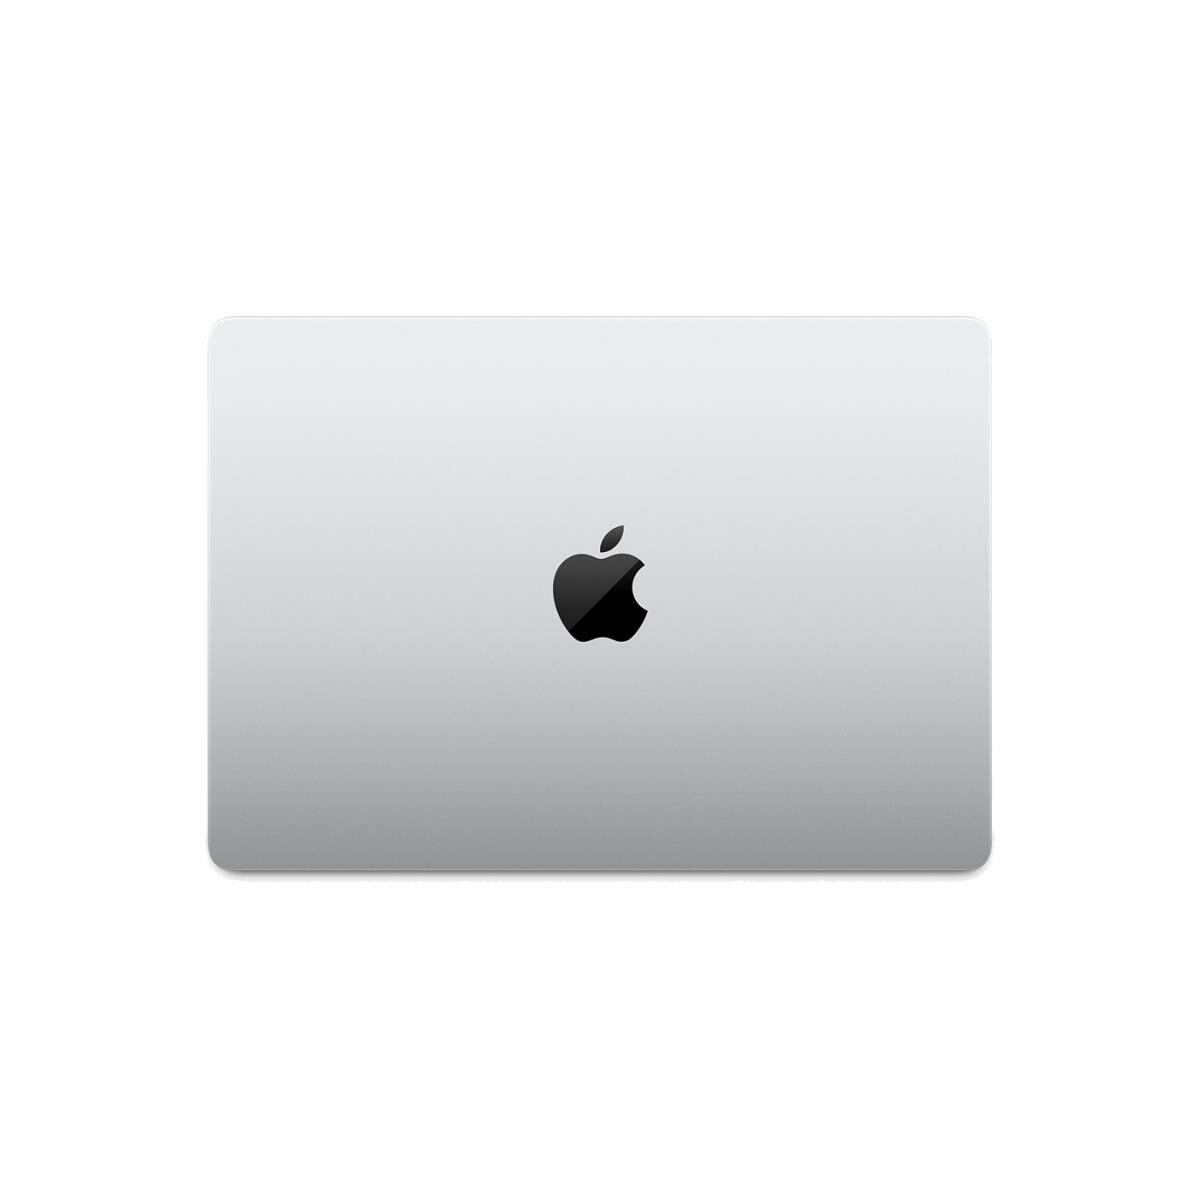 Apple 14-inch MacBook Pro: Apple M1 Pro chip, 10-core CPU, 16-core GPU